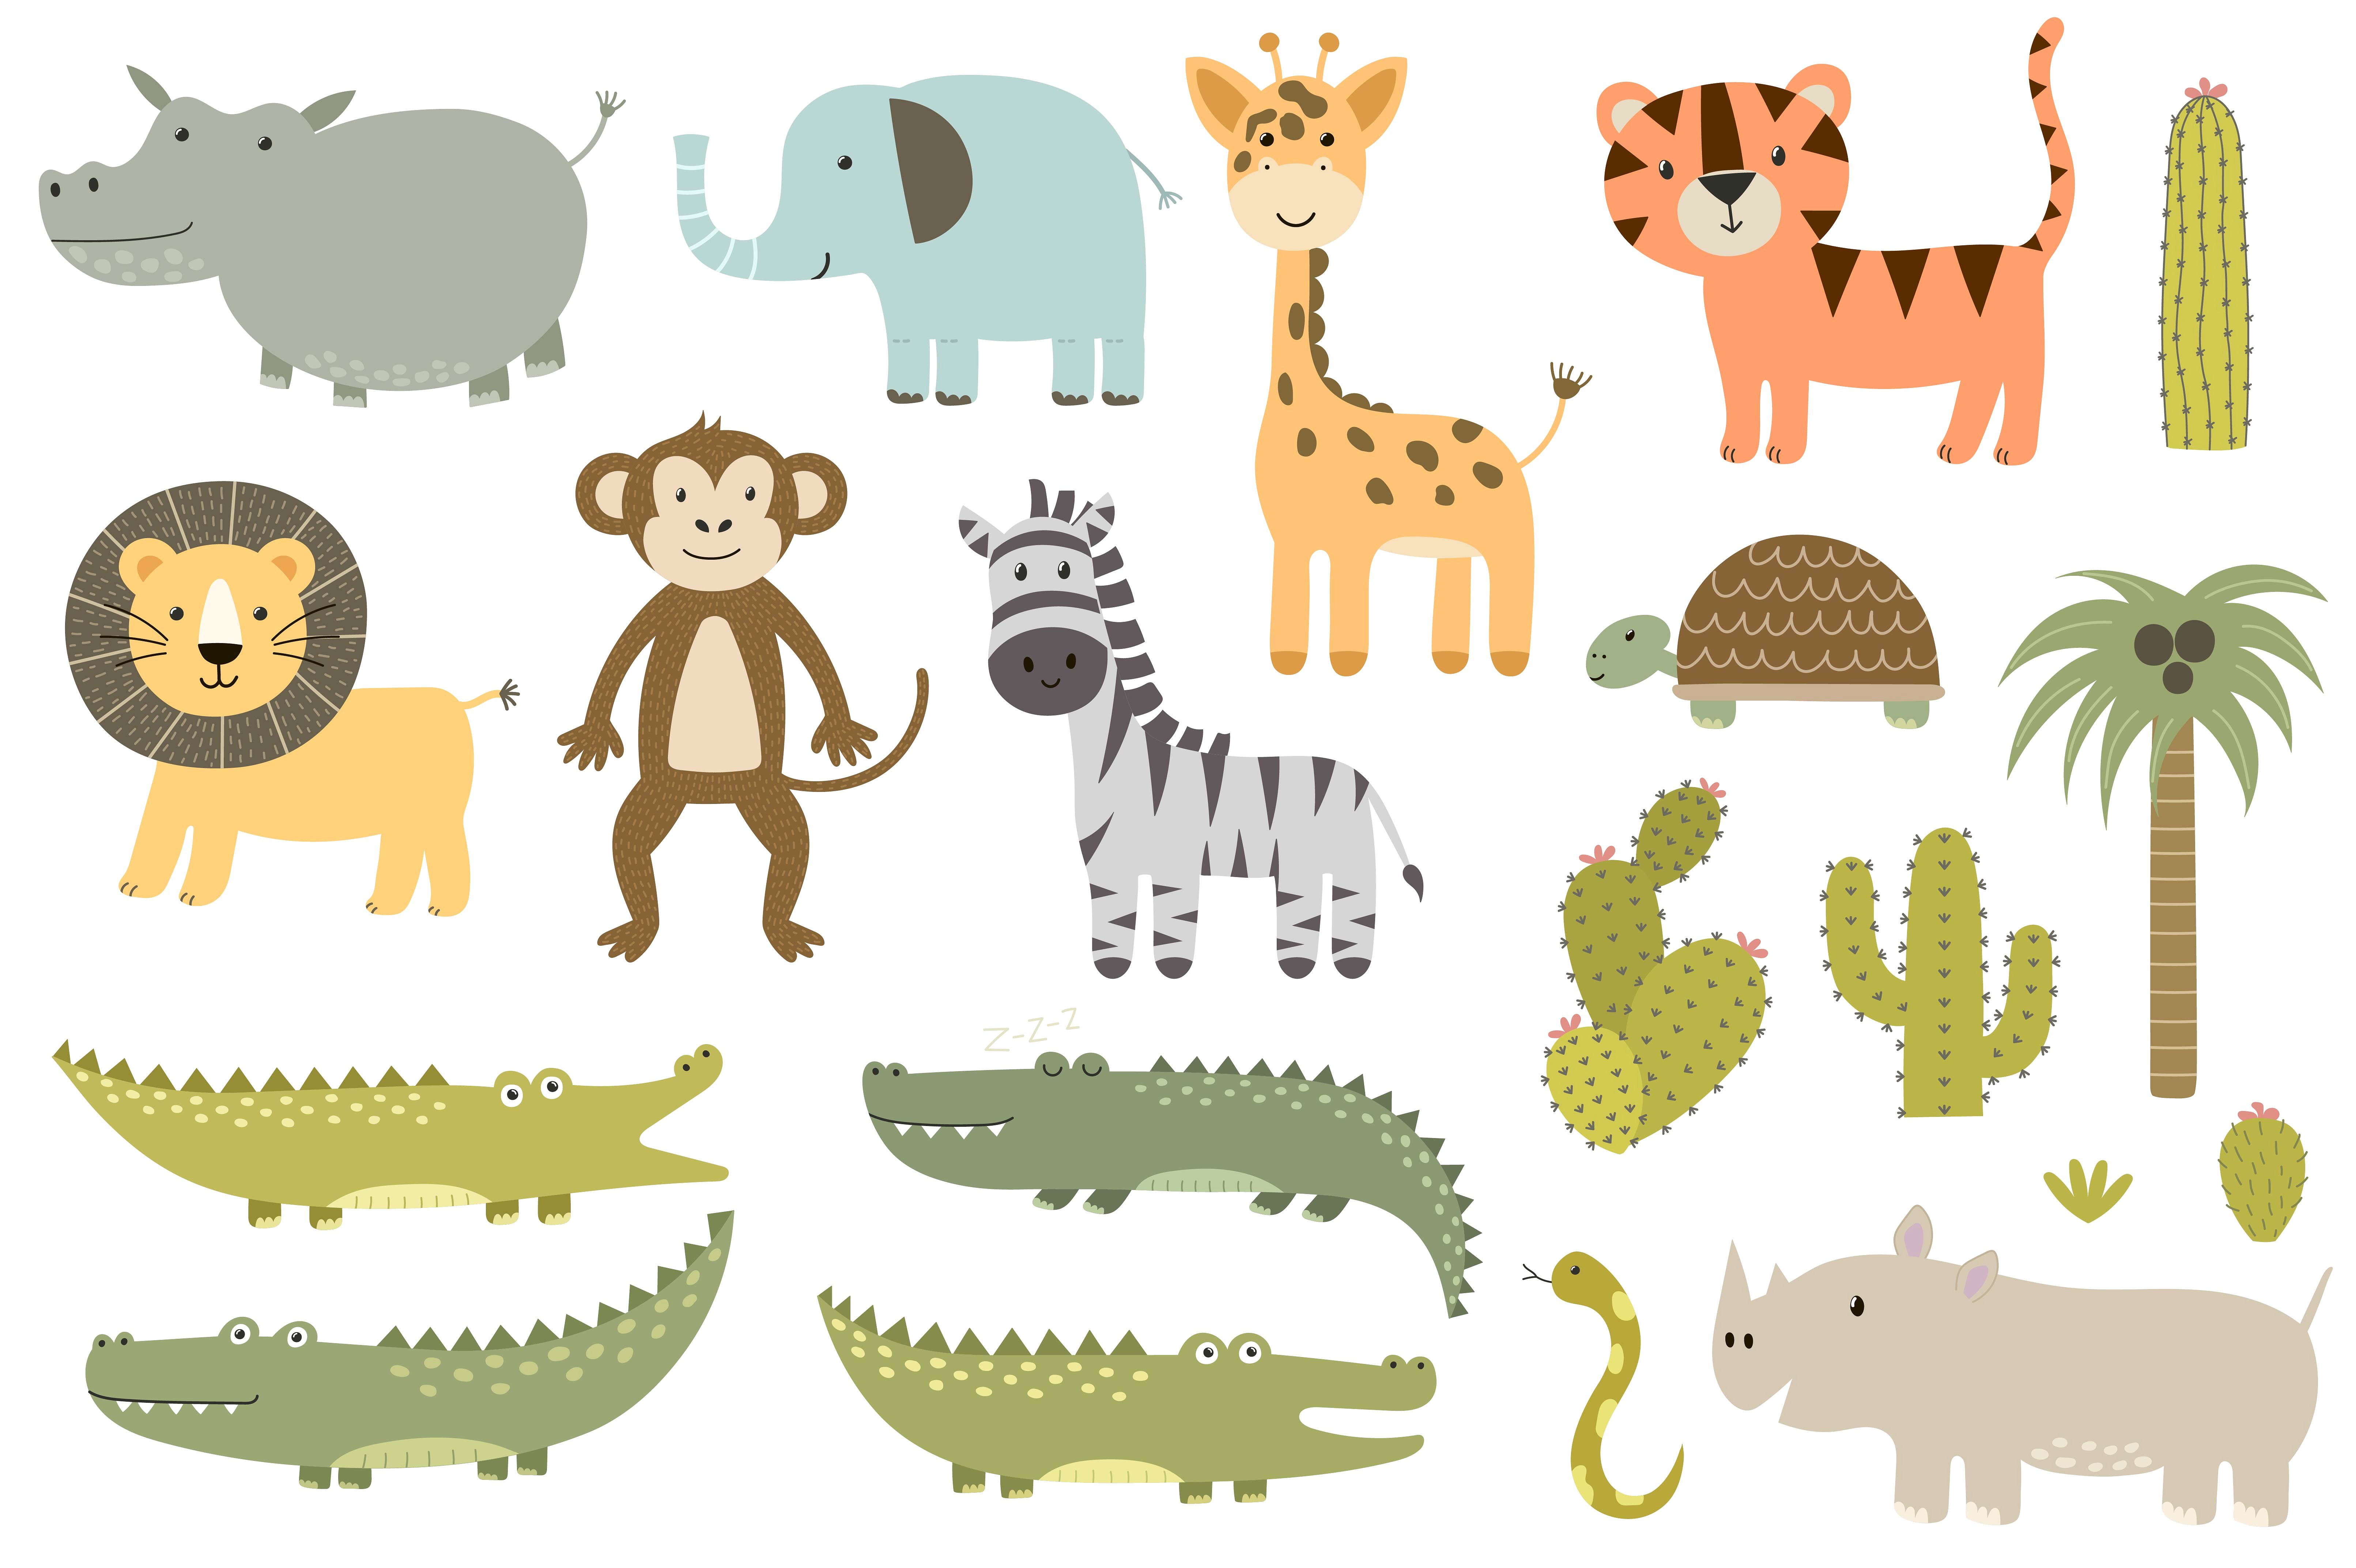 充满童趣的动物无缝背景素材Safari animals pa